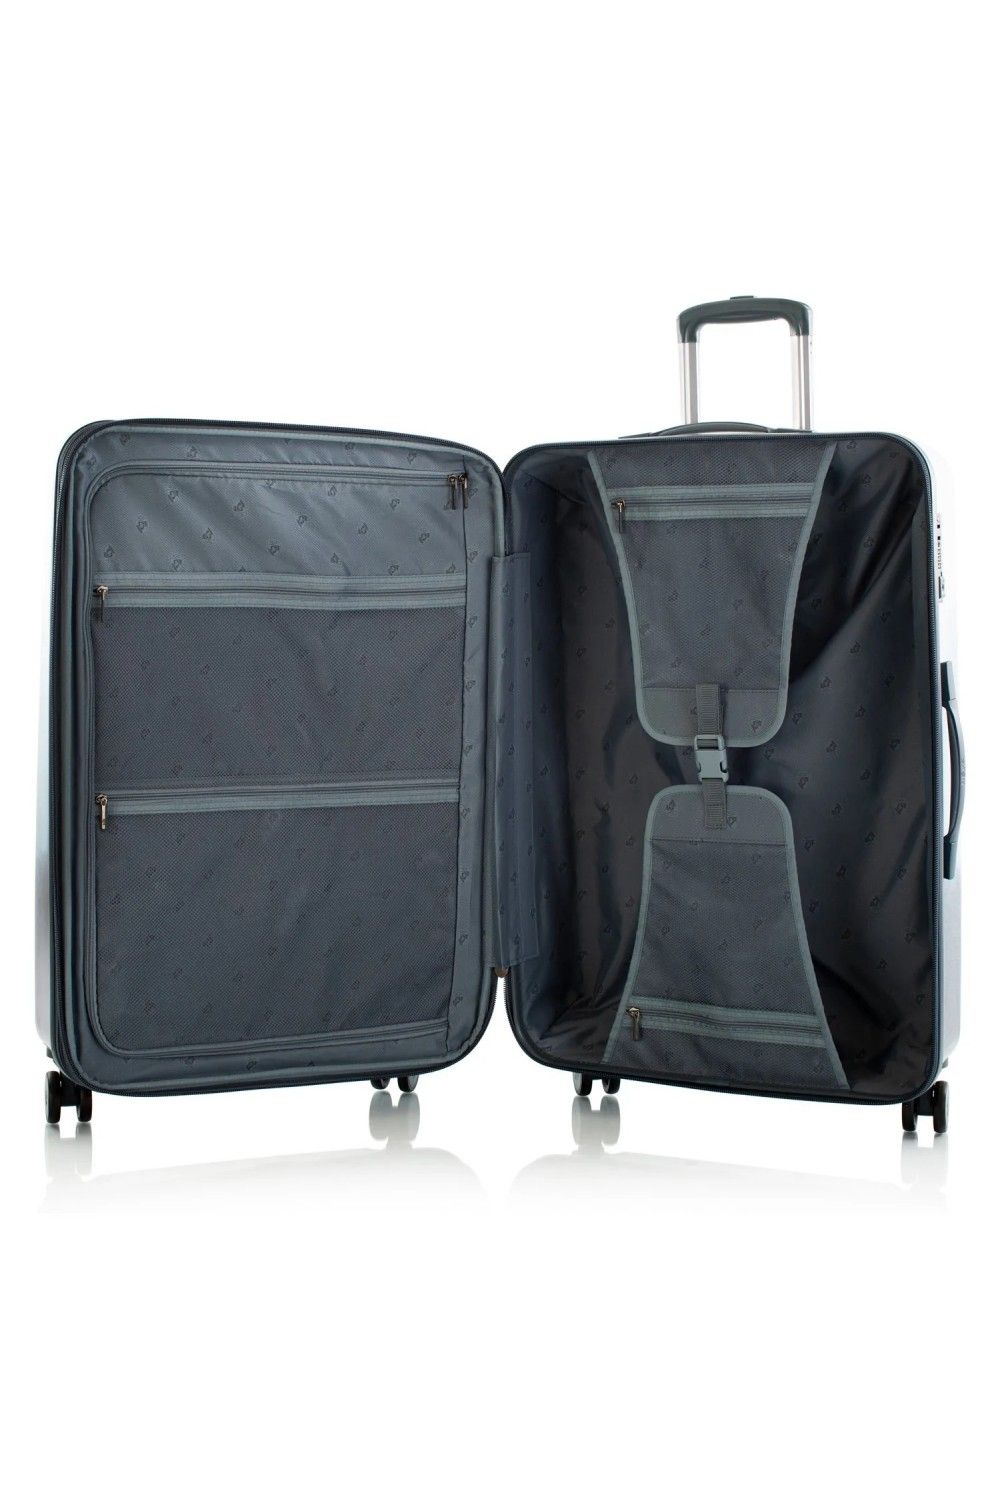 Koffer Heys BLUE Fashion 4 Rad Large 76cm erweiterbar